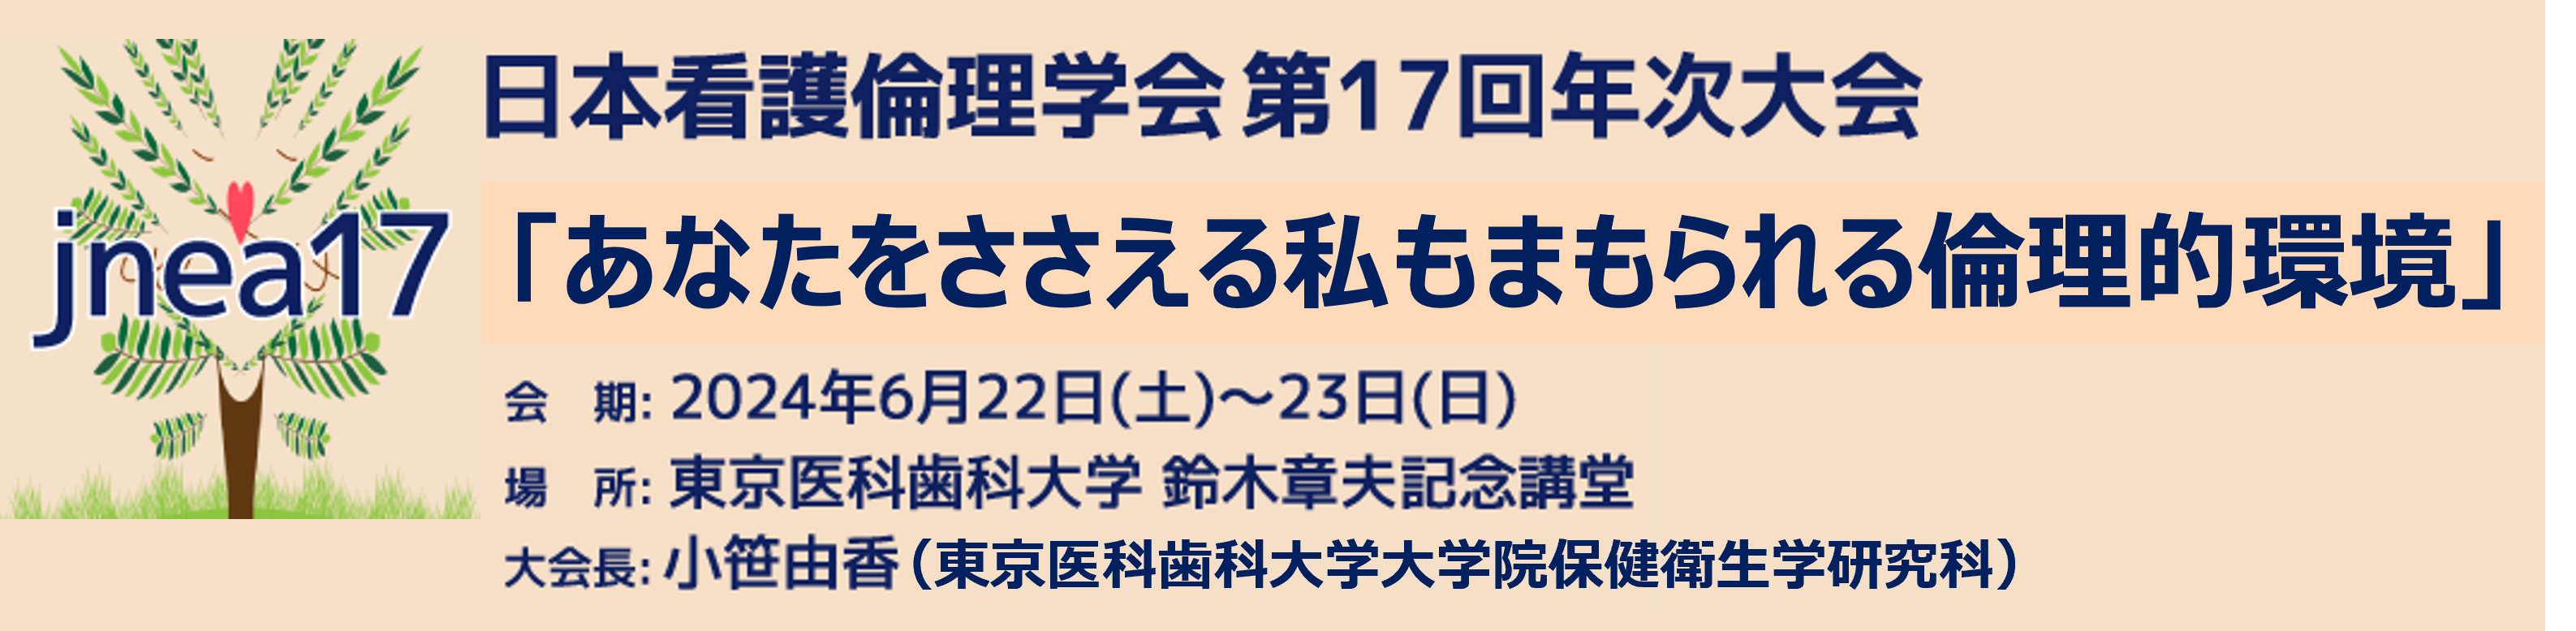 日本看護倫理学会 第17回年次大会